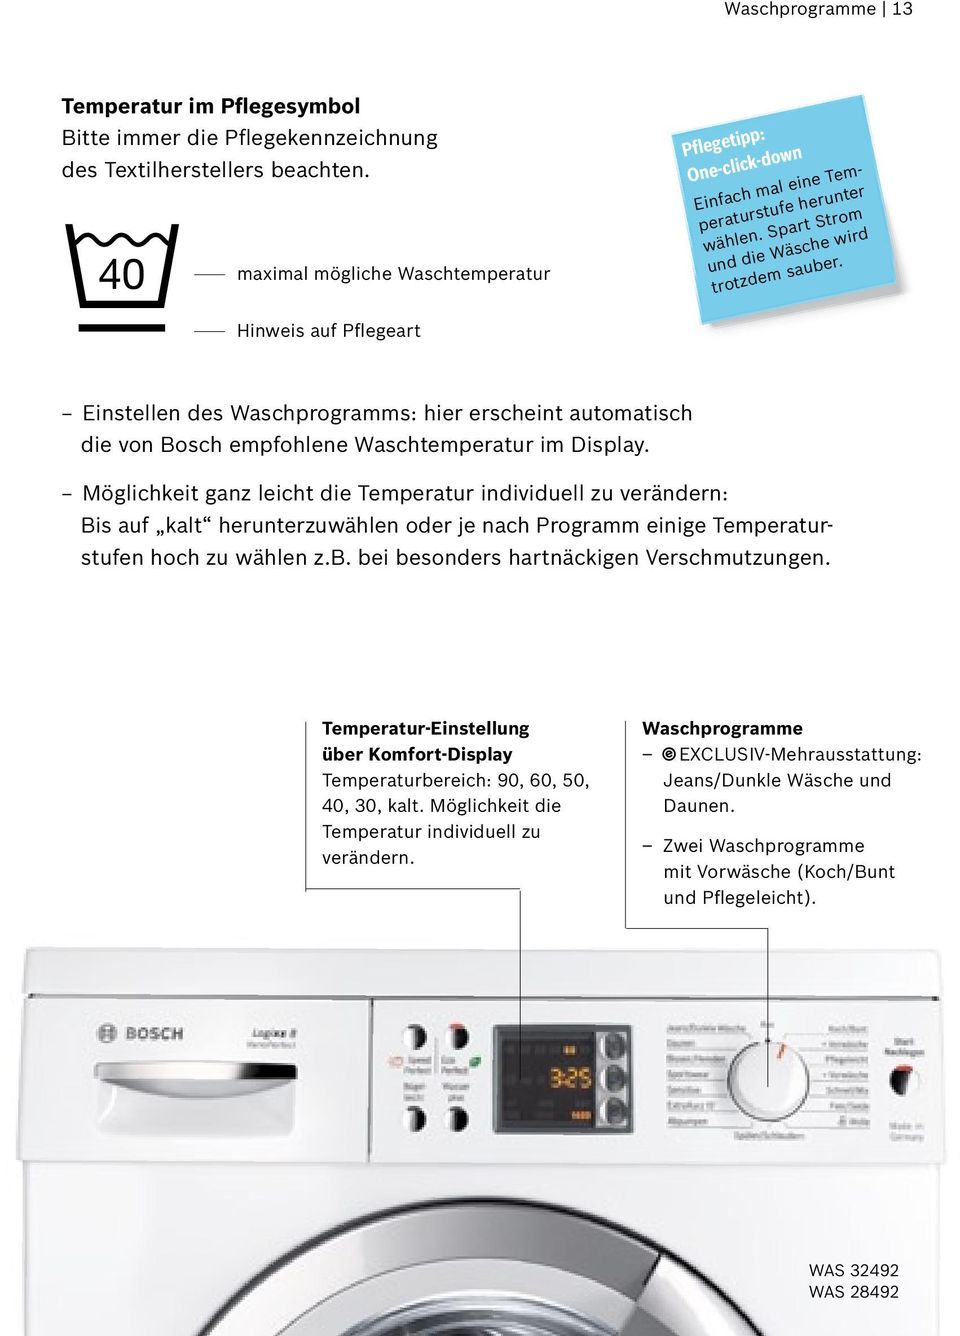 Normal - waschgang Hinweis auf Pflegeart Einstellen des Waschprogramms: hier erscheint automatisch die von Bosch empfohlene Waschtemperatur im Display.